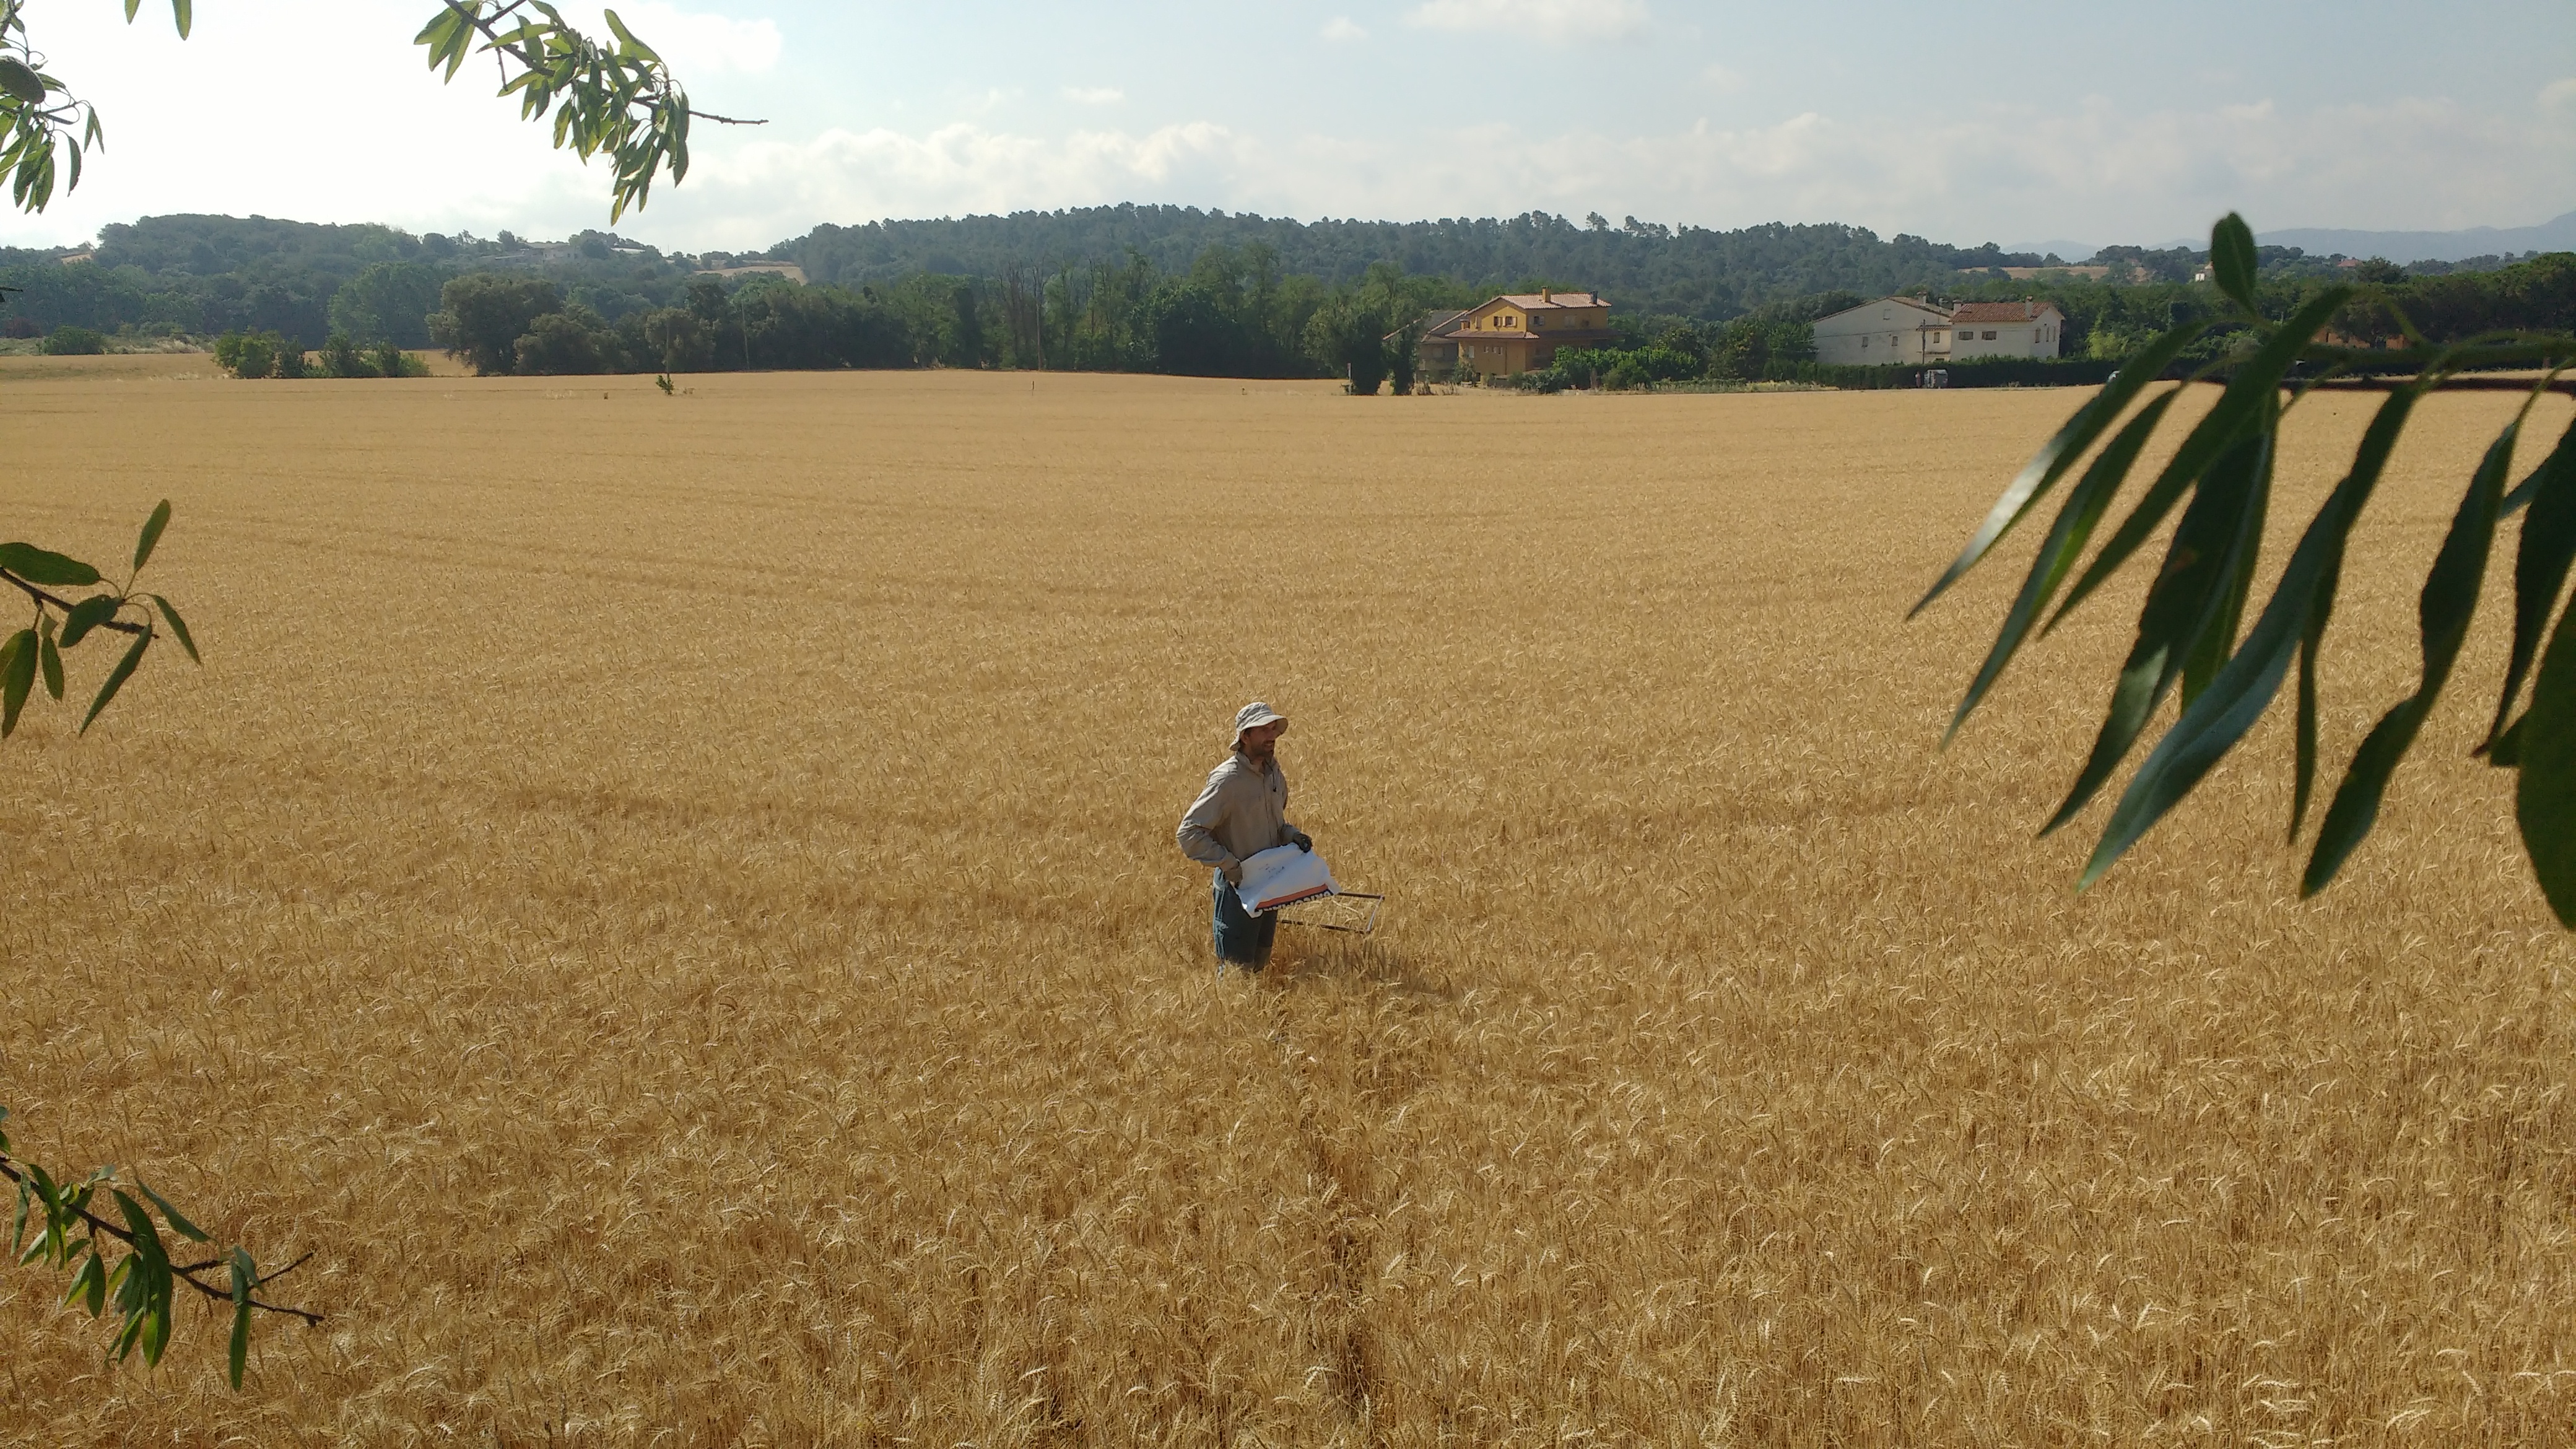 Campo de trigo en Franquesas del Vallés (Barcelona), uno de los analizados en el trabajo. Imagen: David Sánchez Pescador / CSIC